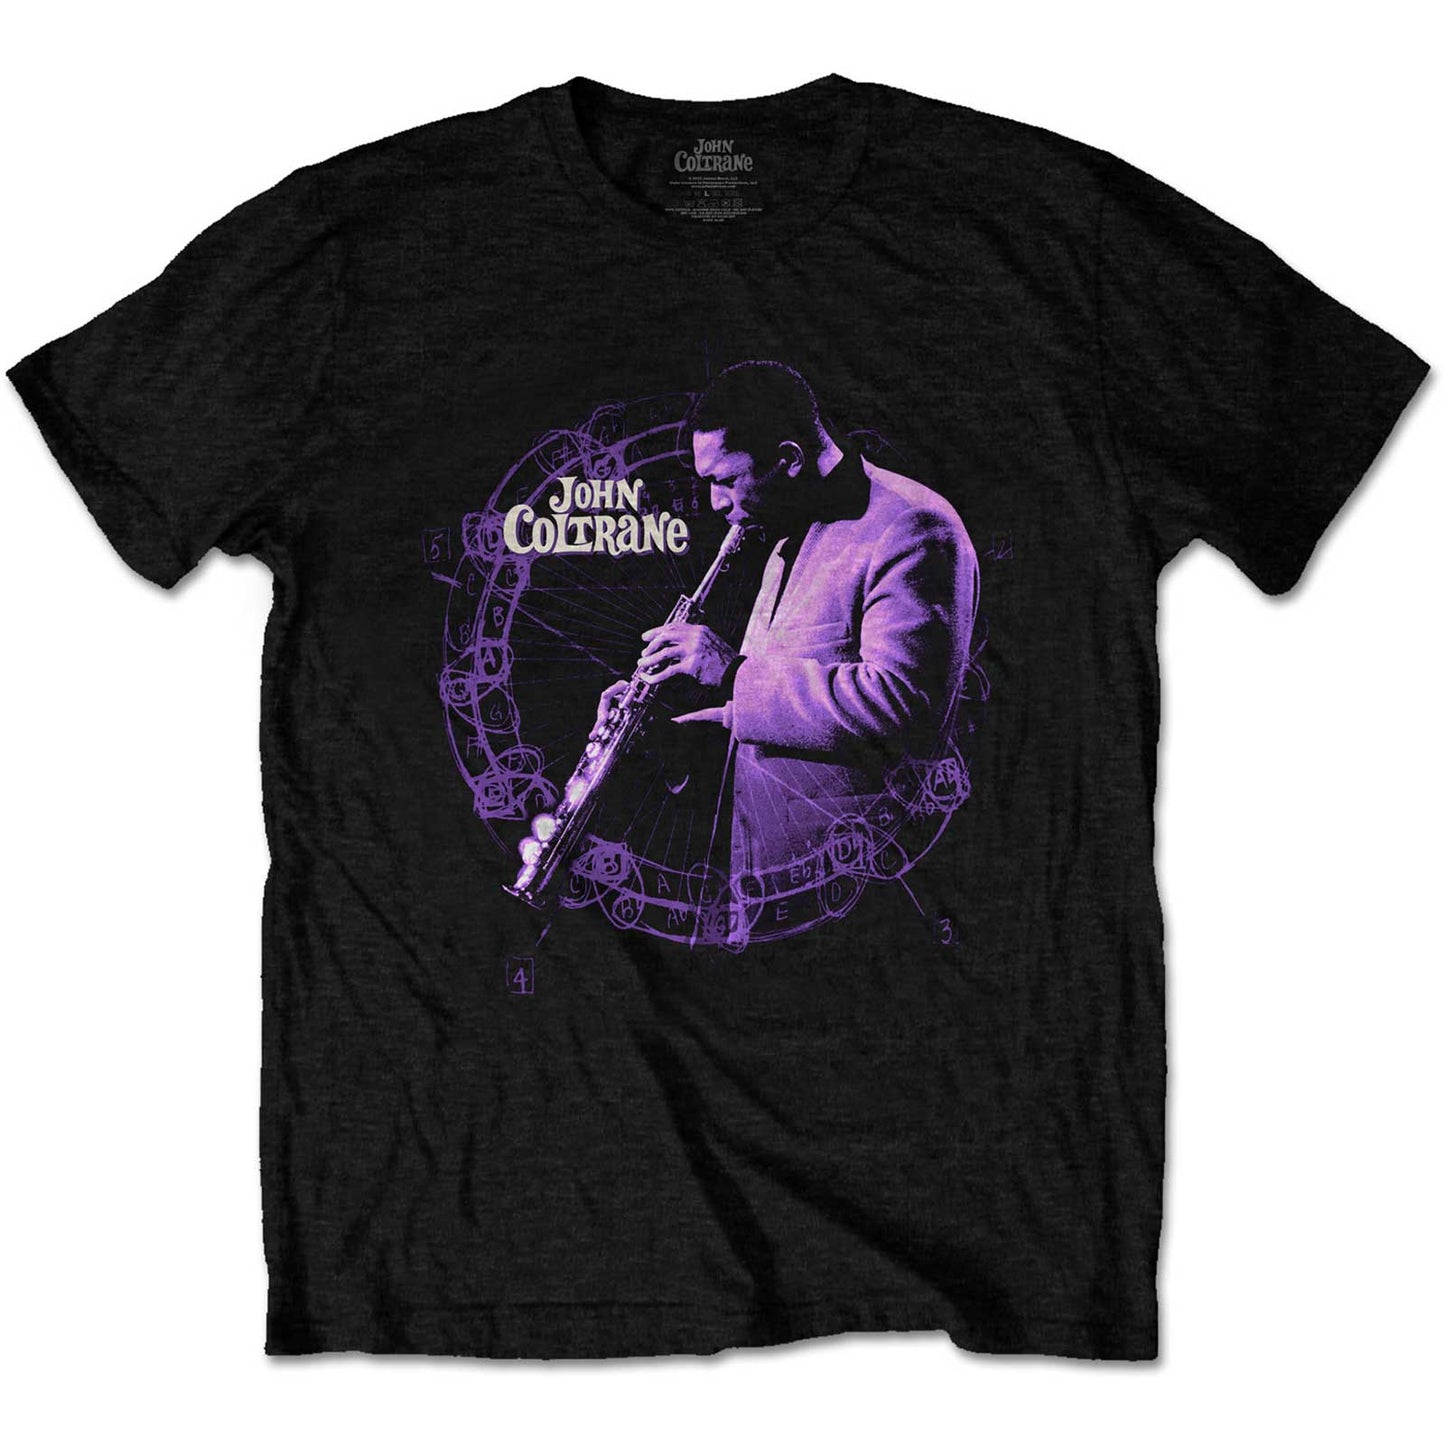 John Coltrane Official Shirt